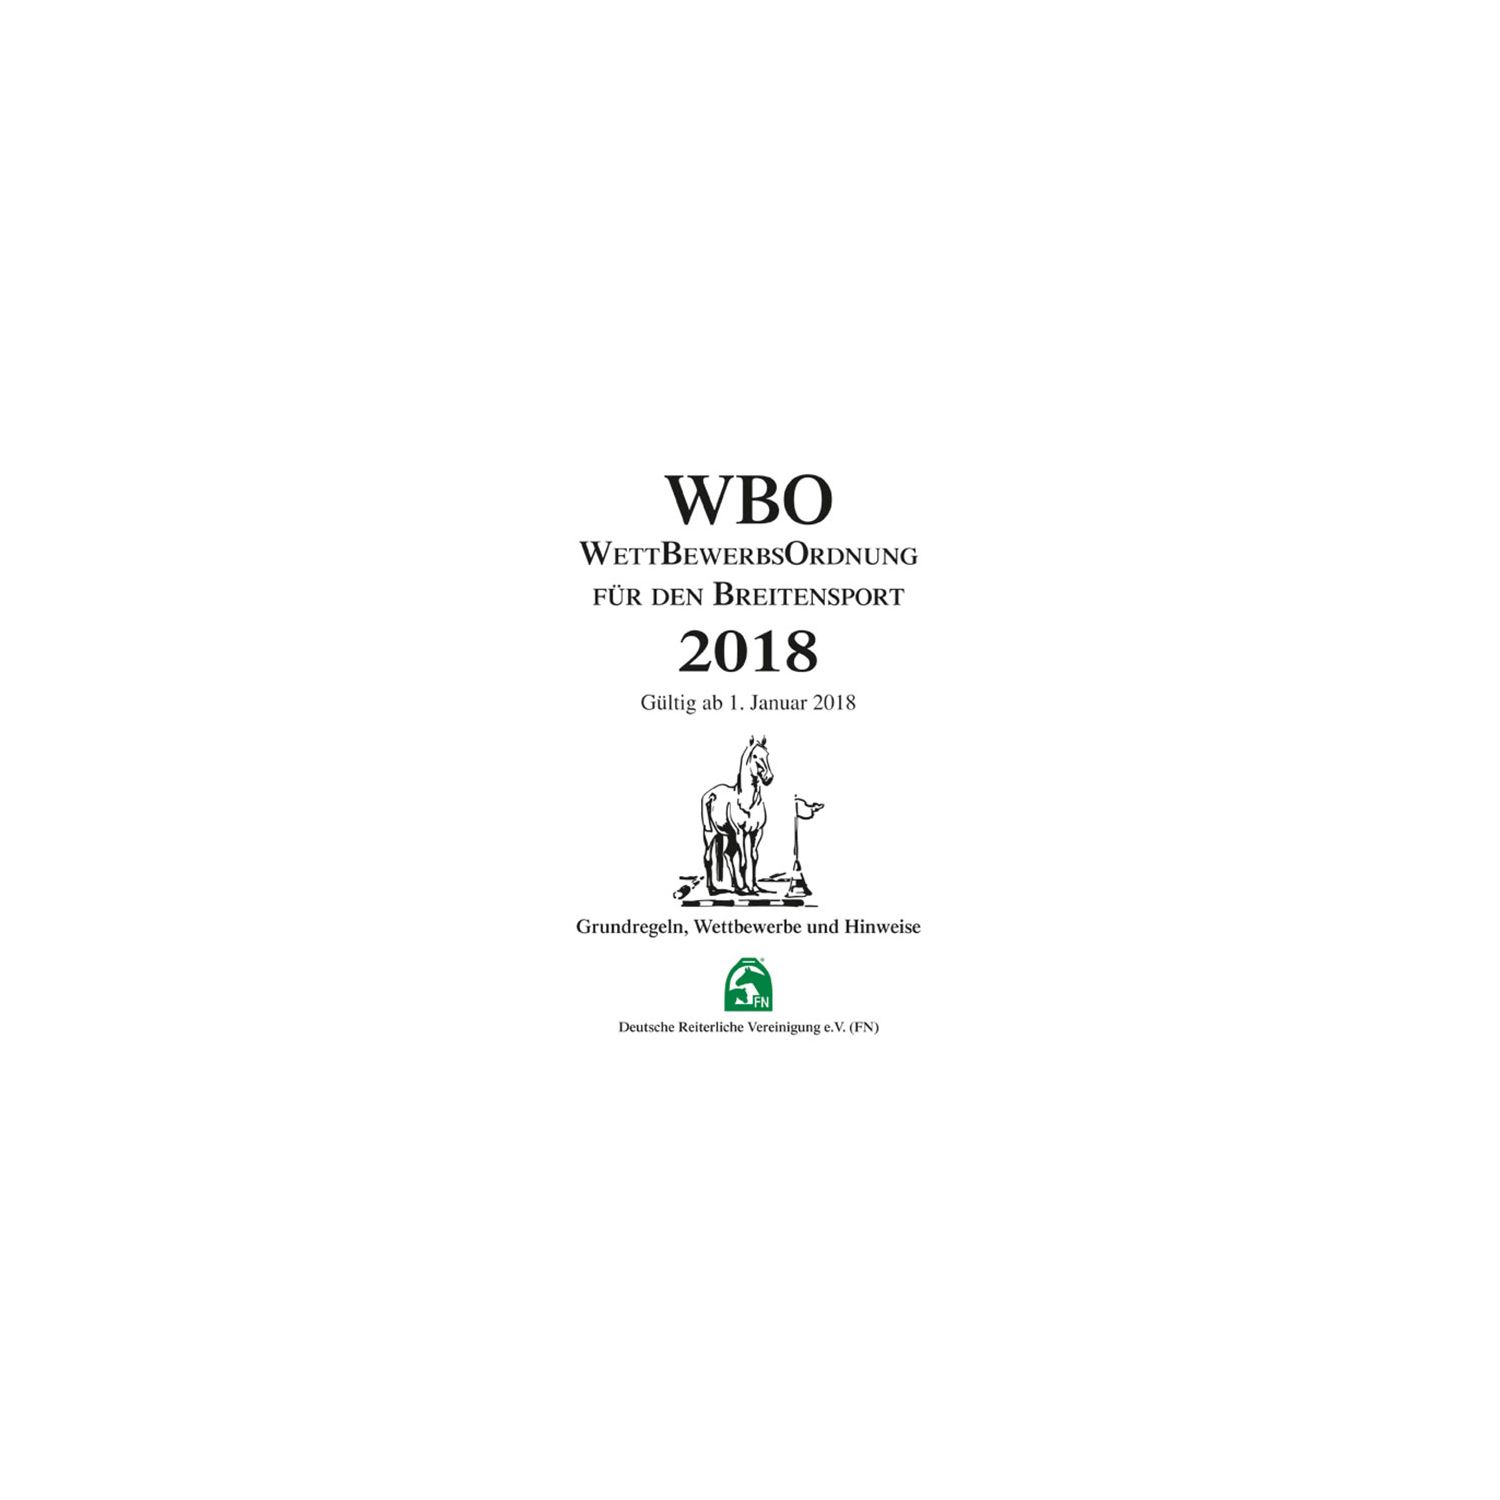 WBO Wettbewerbsordnung für den Breitensport 2018, FNverlag 